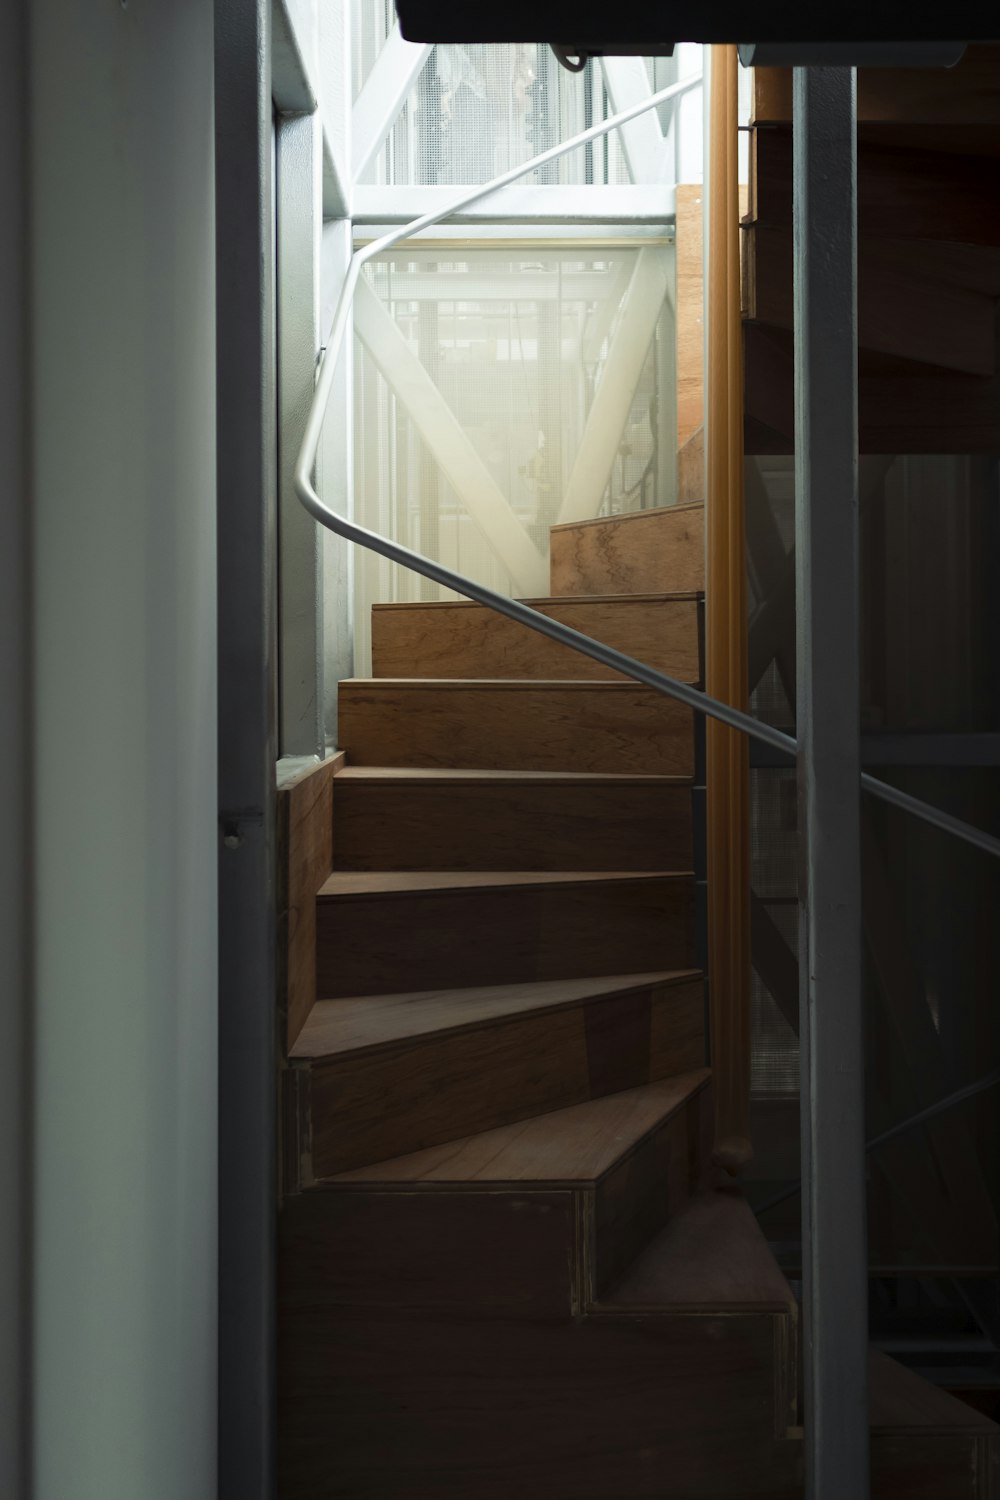 Escalier en bois brun près de la fenêtre en verre